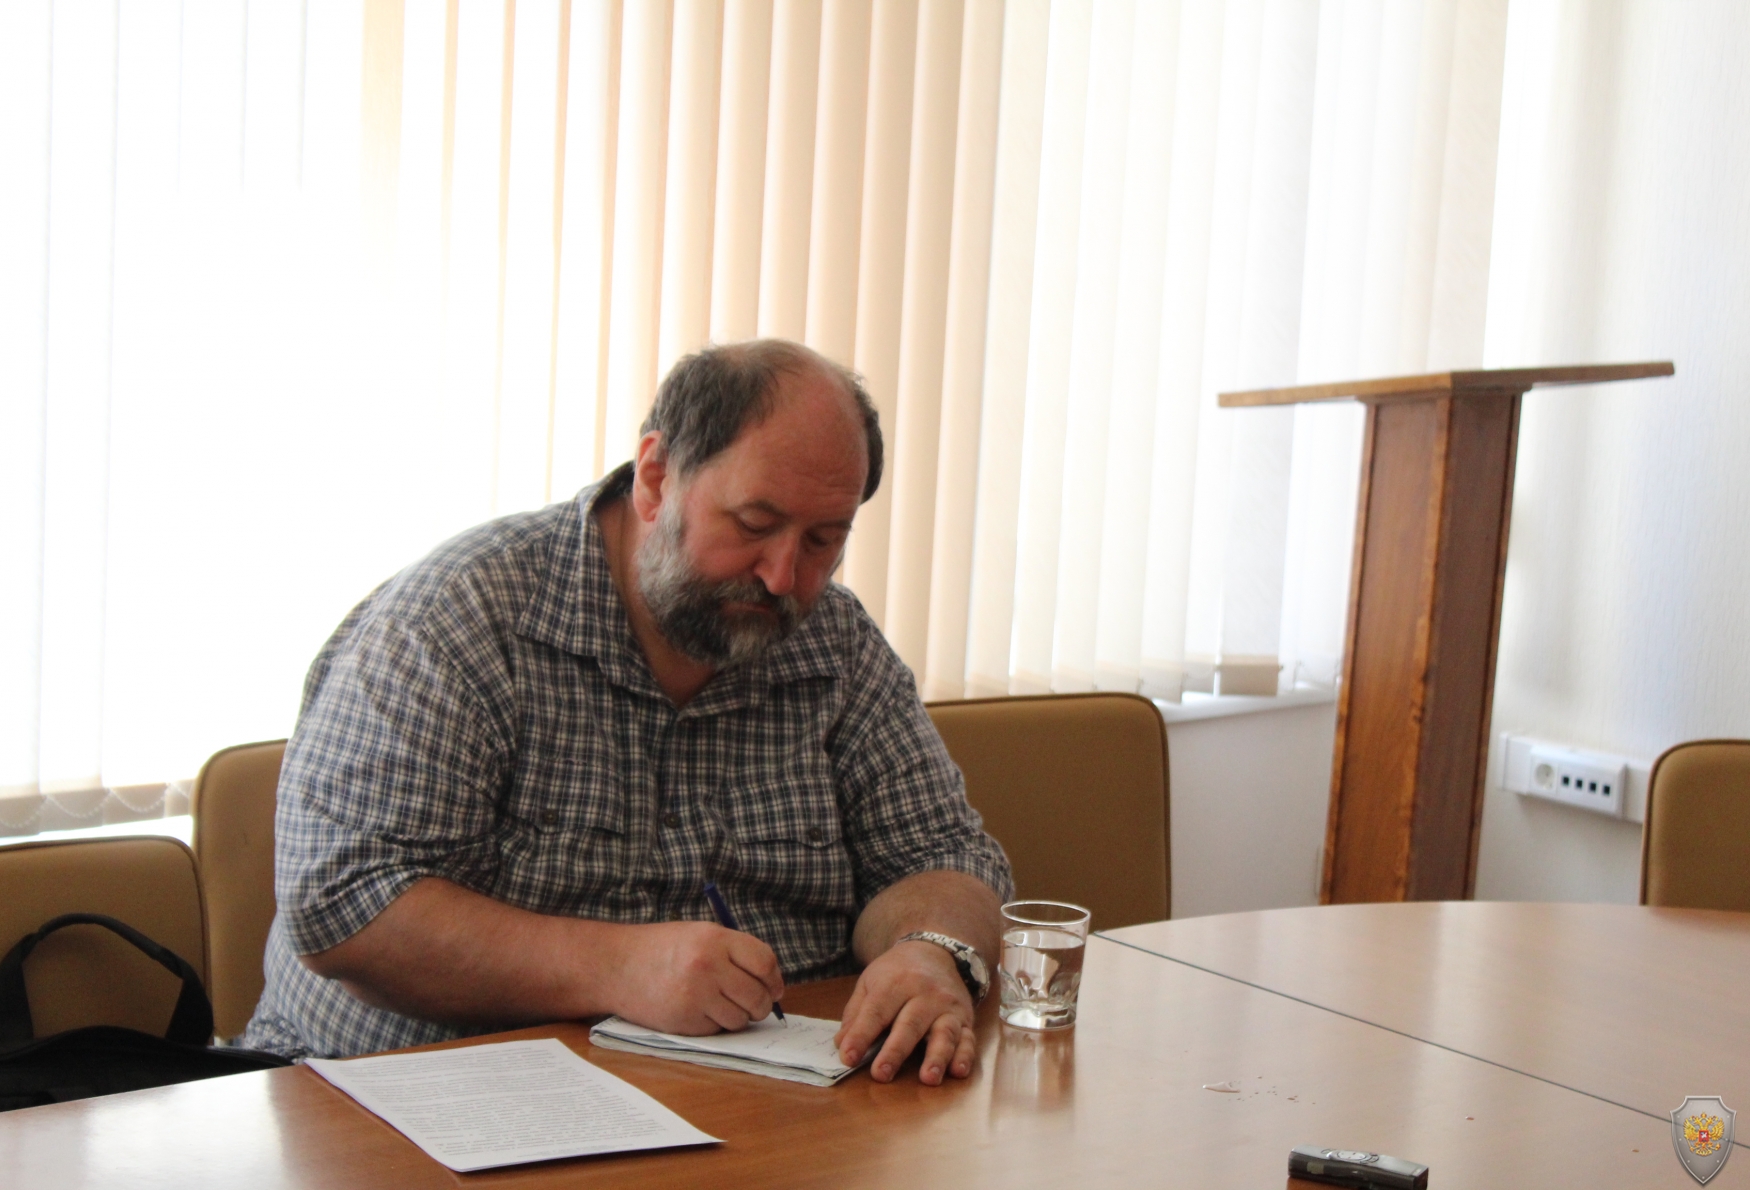 Юрий Смольянинов провел брифинг для региональных СМИ в преддверии «Дня солидарности в борьбе с терроризмом»